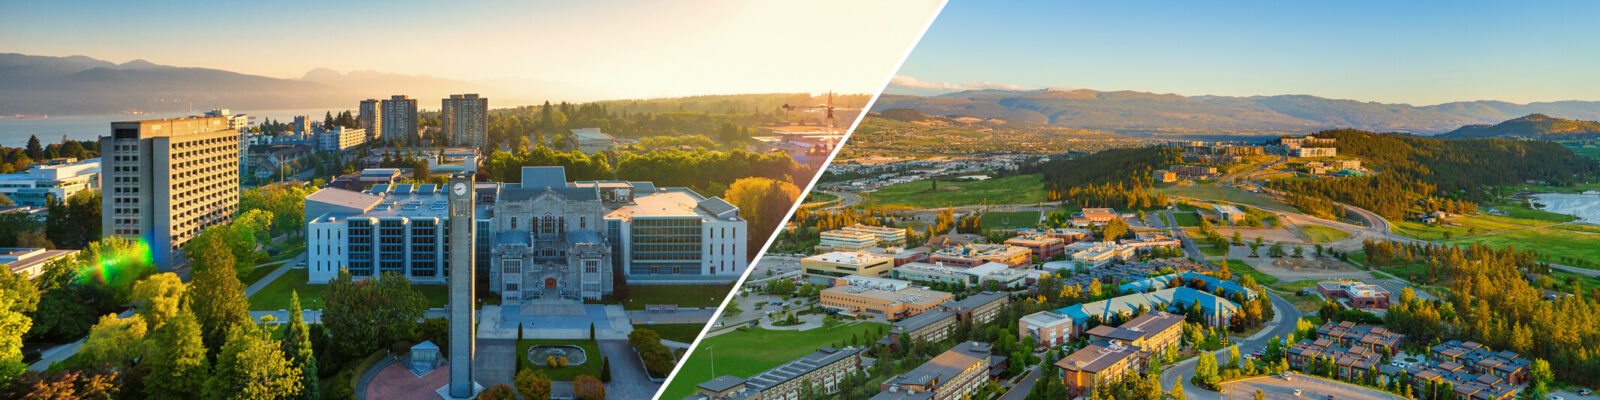 UBC campuses